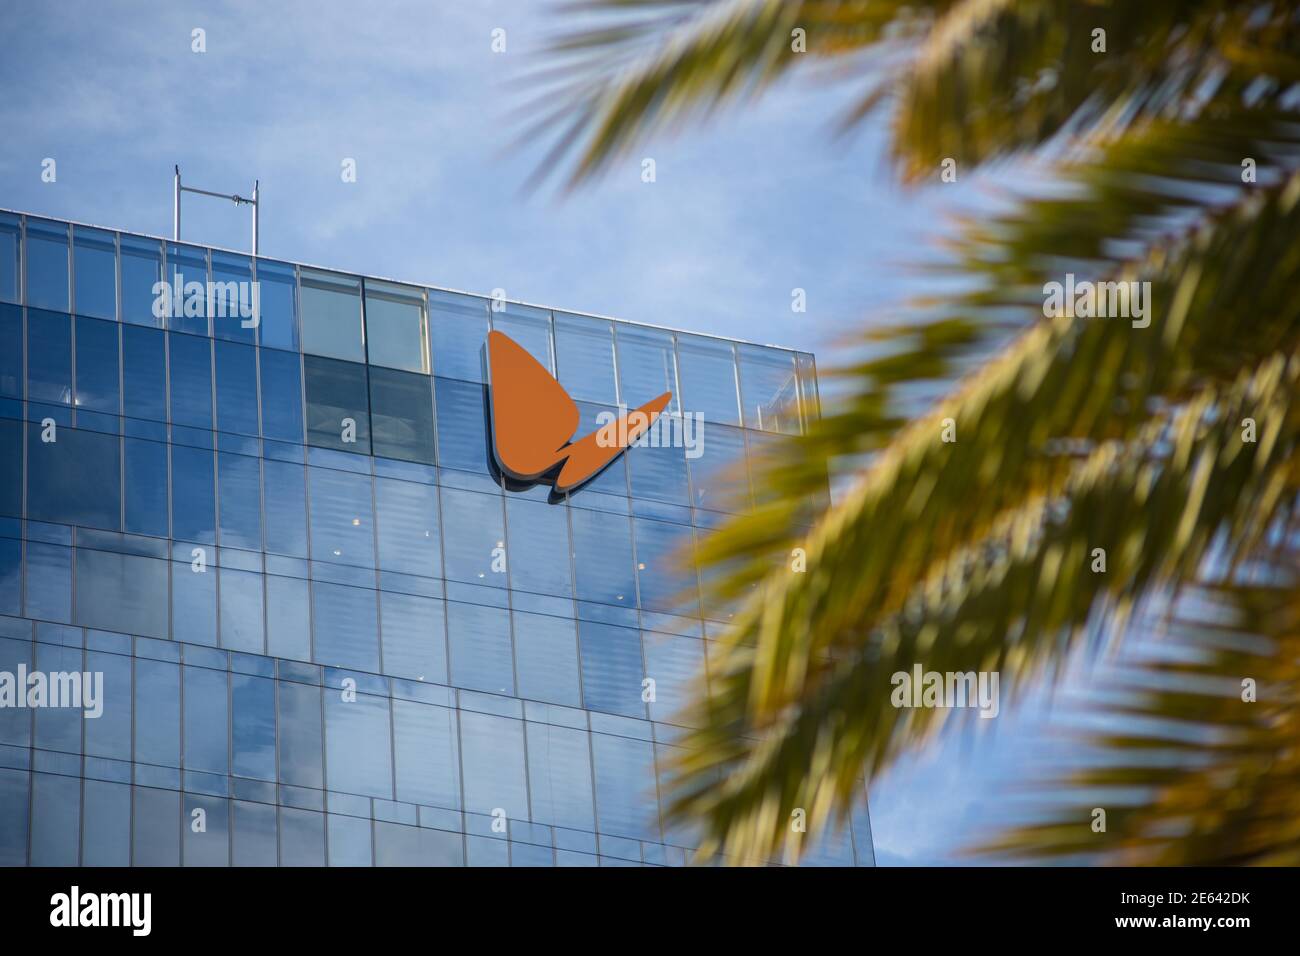 Das Logo des spanischen Strom- und Gasunternehmens Naturgy ist auf dem Firmengebäude in Barcelona zu sehen.der australische Investmentfonds IFM Investors hat ein teilweises freiwilliges Übernahmeangebot gestartet, um 22.69% des Aktienkapitals des spanischen Strom- und Gasunternehmens Naturgy zu übernehmen. Stockfoto